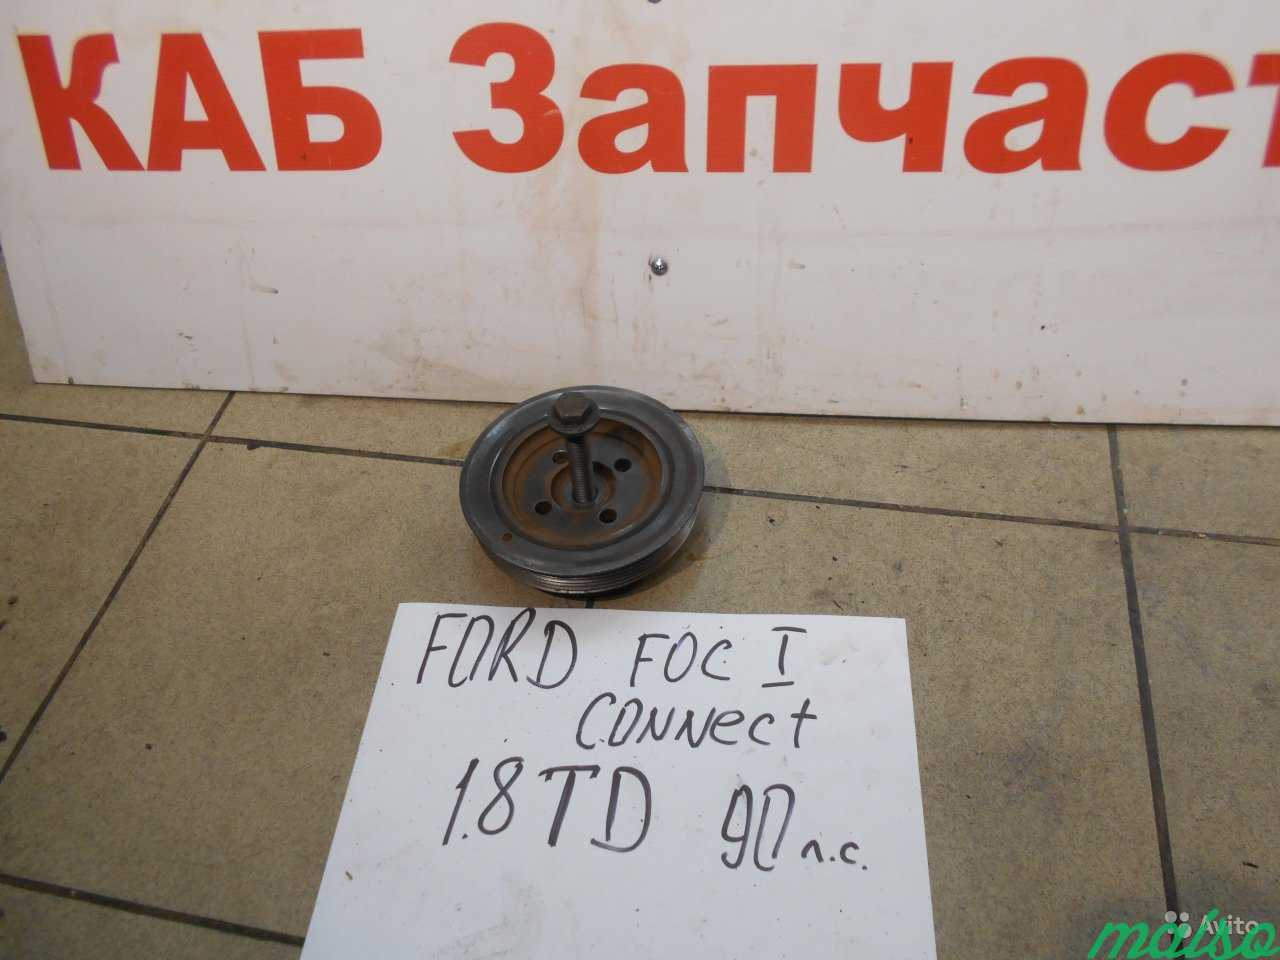 Шкив коленвала Ford Focus Connect 1.8TD 98-05 г/в в Санкт-Петербурге. Фото 1